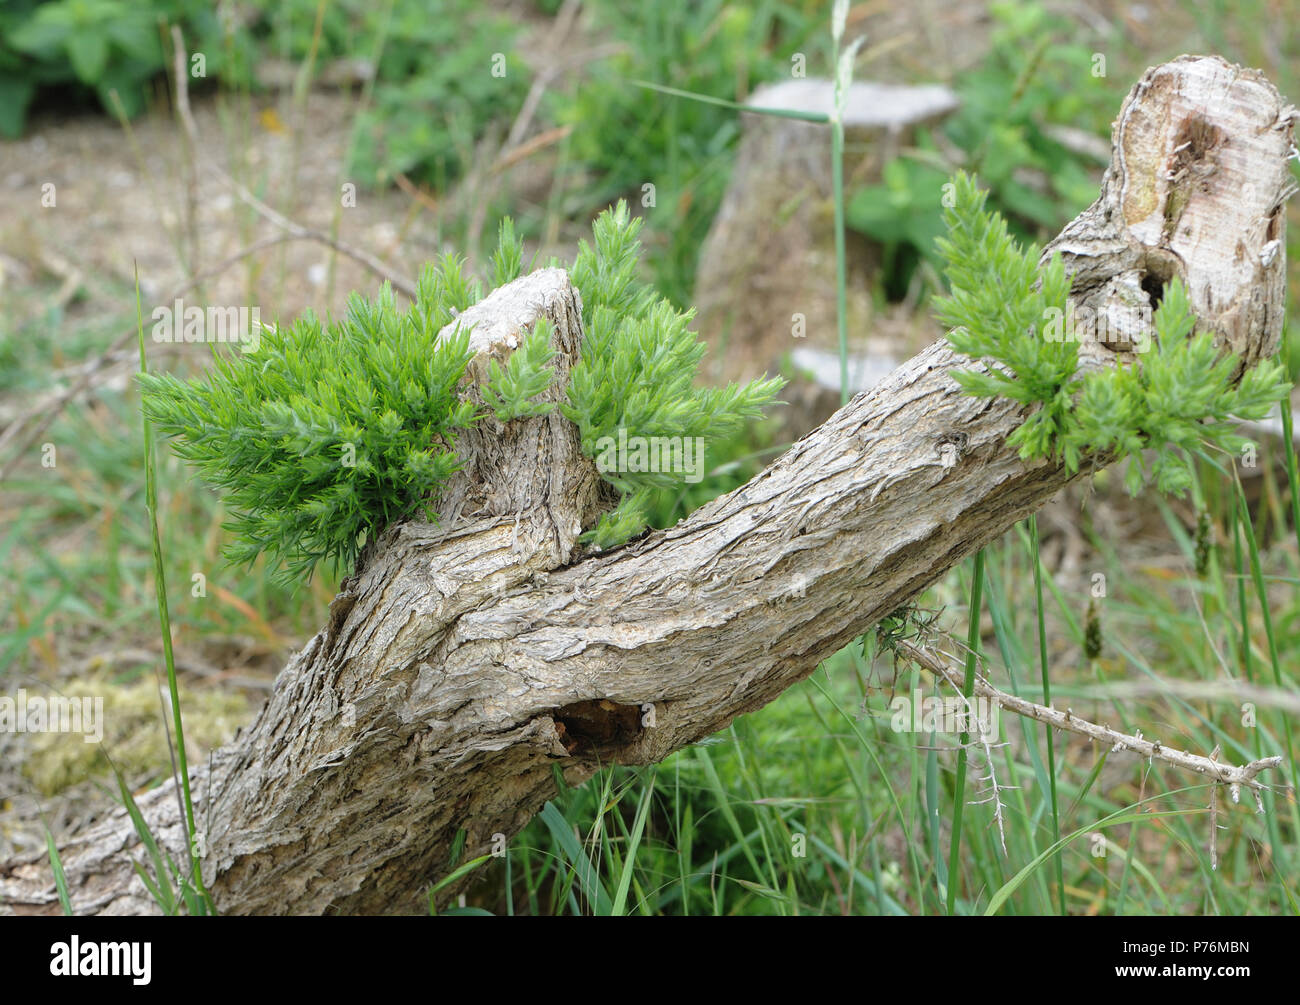 Aliaga (Ulex europaeus) libremente coles y regenera cuando ramas viejas son severamente reducidos. Reserva Natural de Dungeness, Dungeness, Kent, UK. Foto de stock